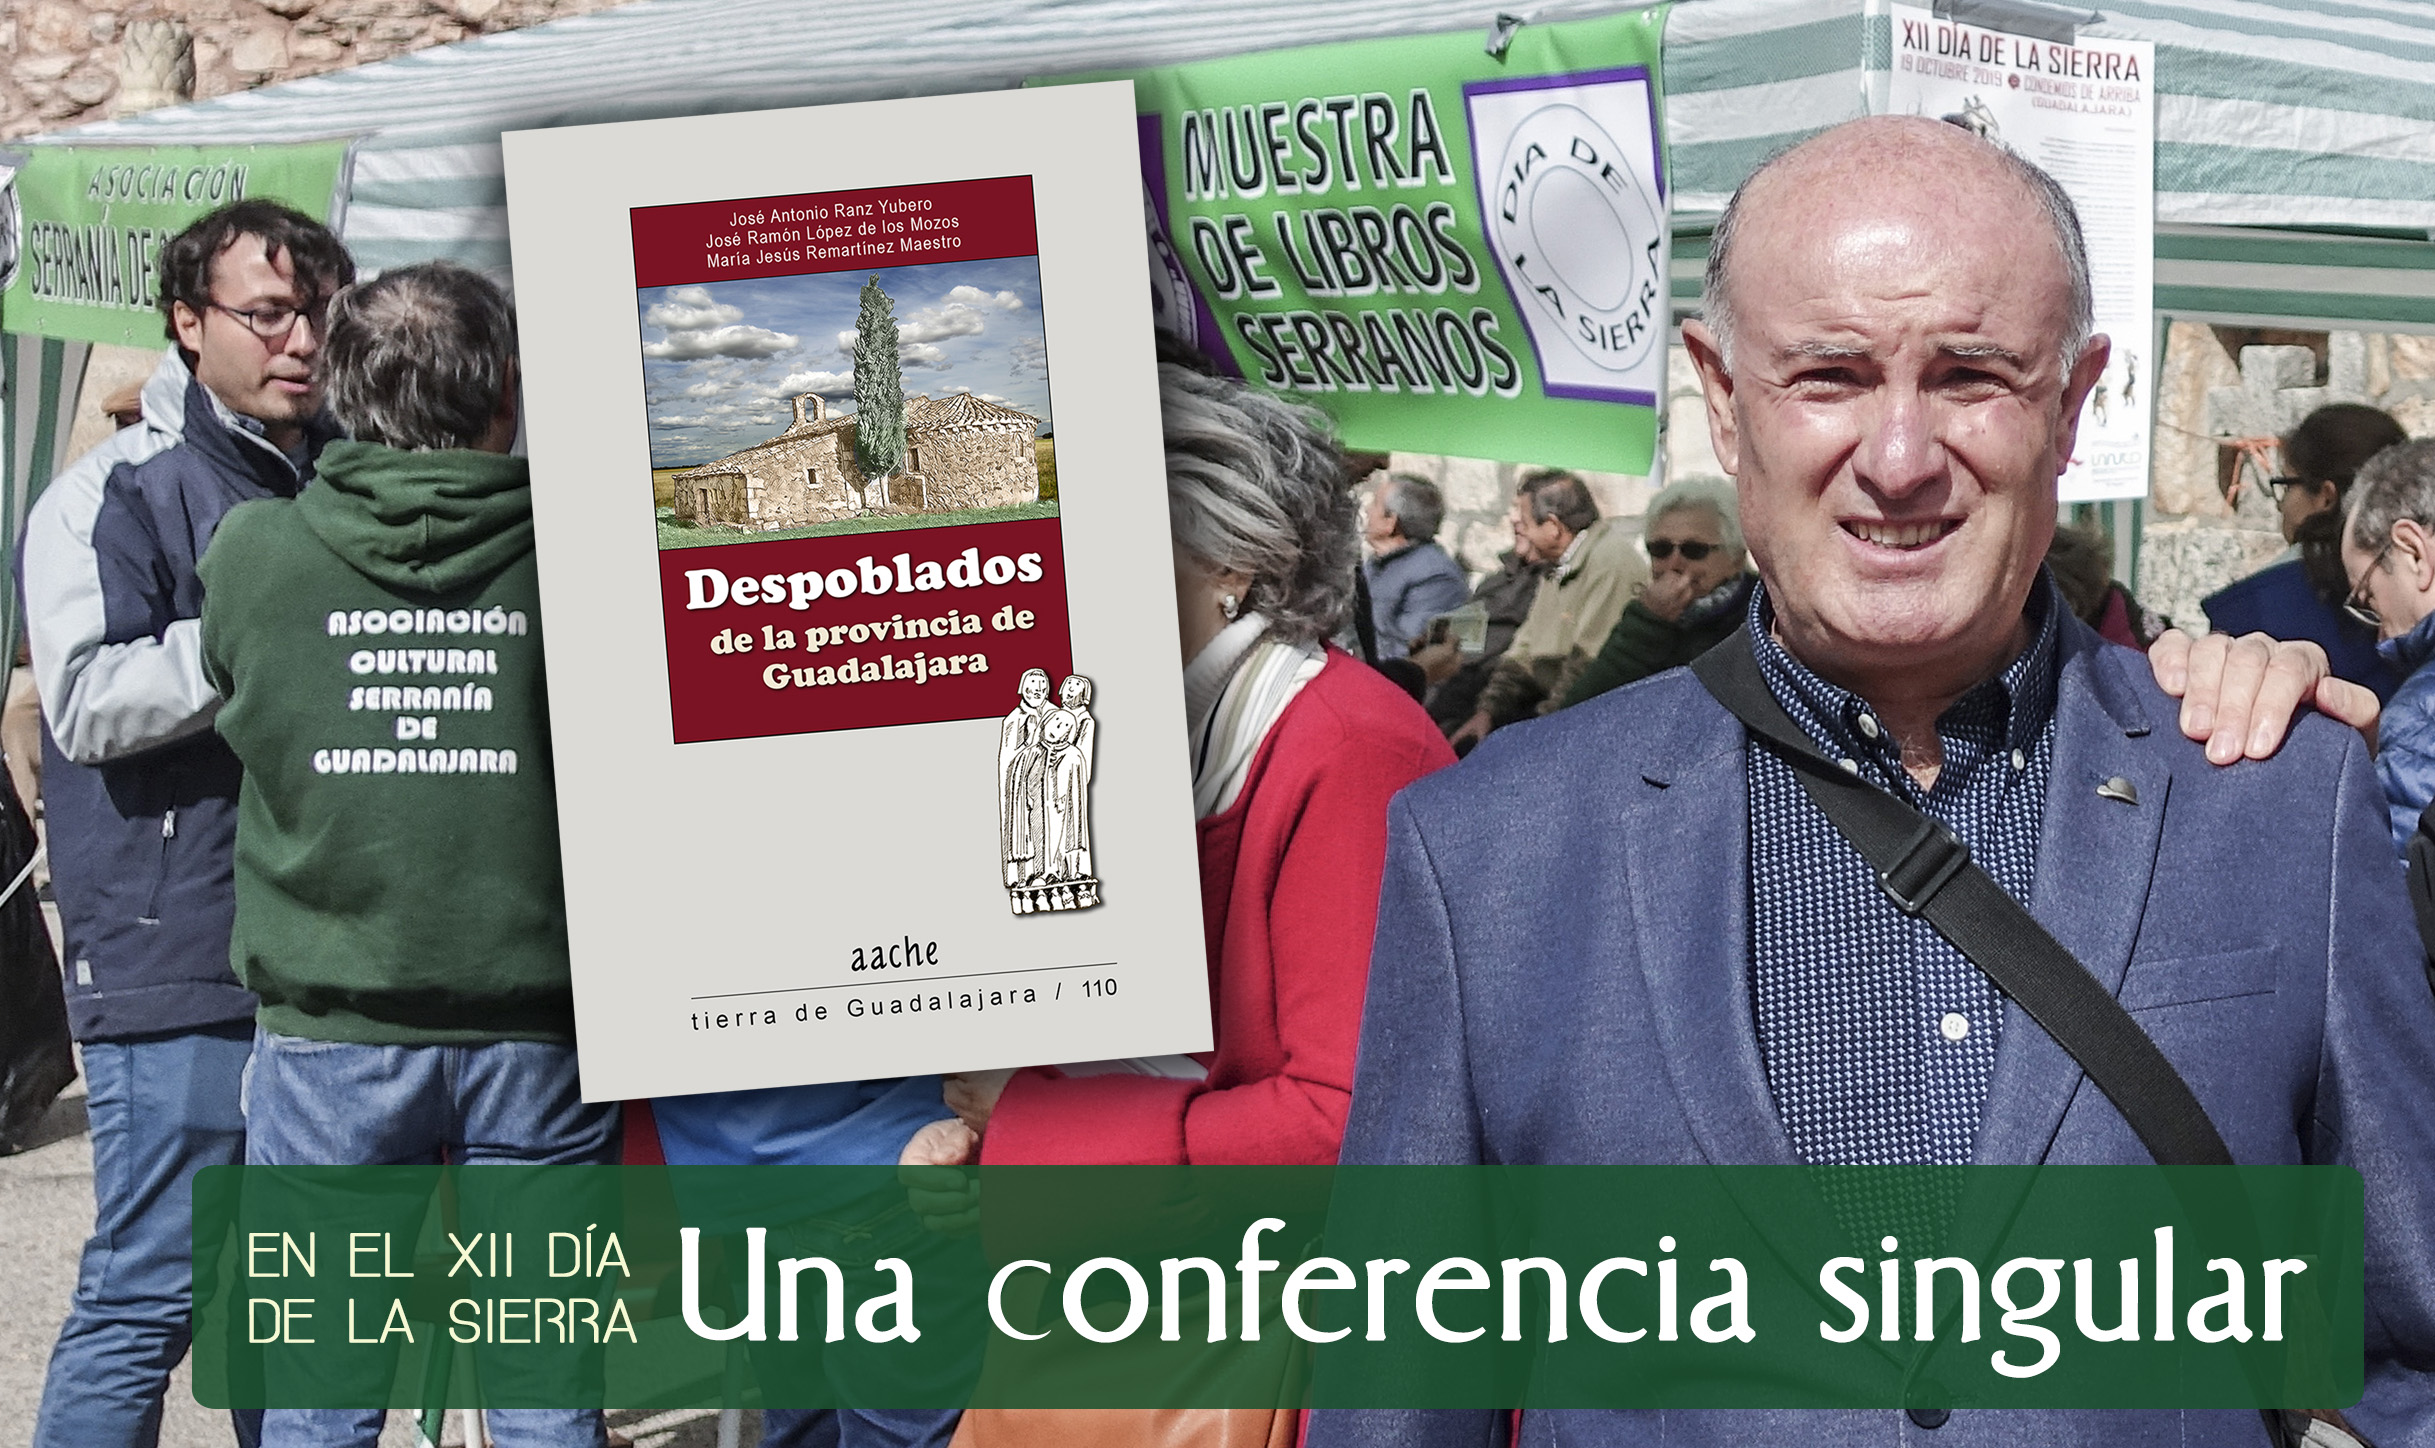 Conferencia de Jose Antonio Ranz Yubero en Condemios de Arriba